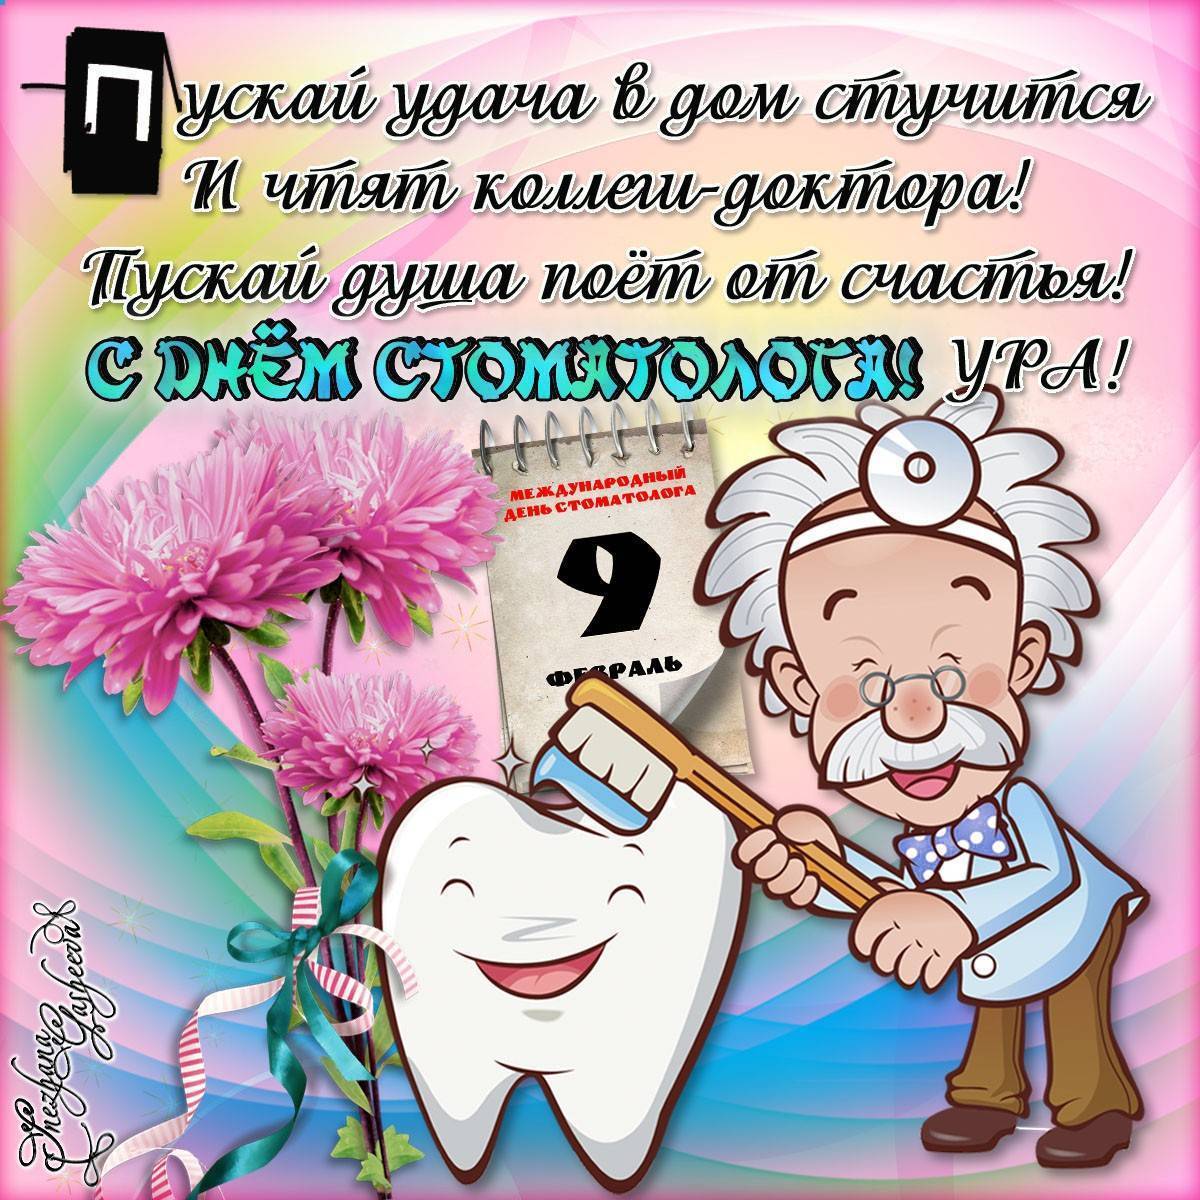 Международный день стоматолога поздравления и пожелания